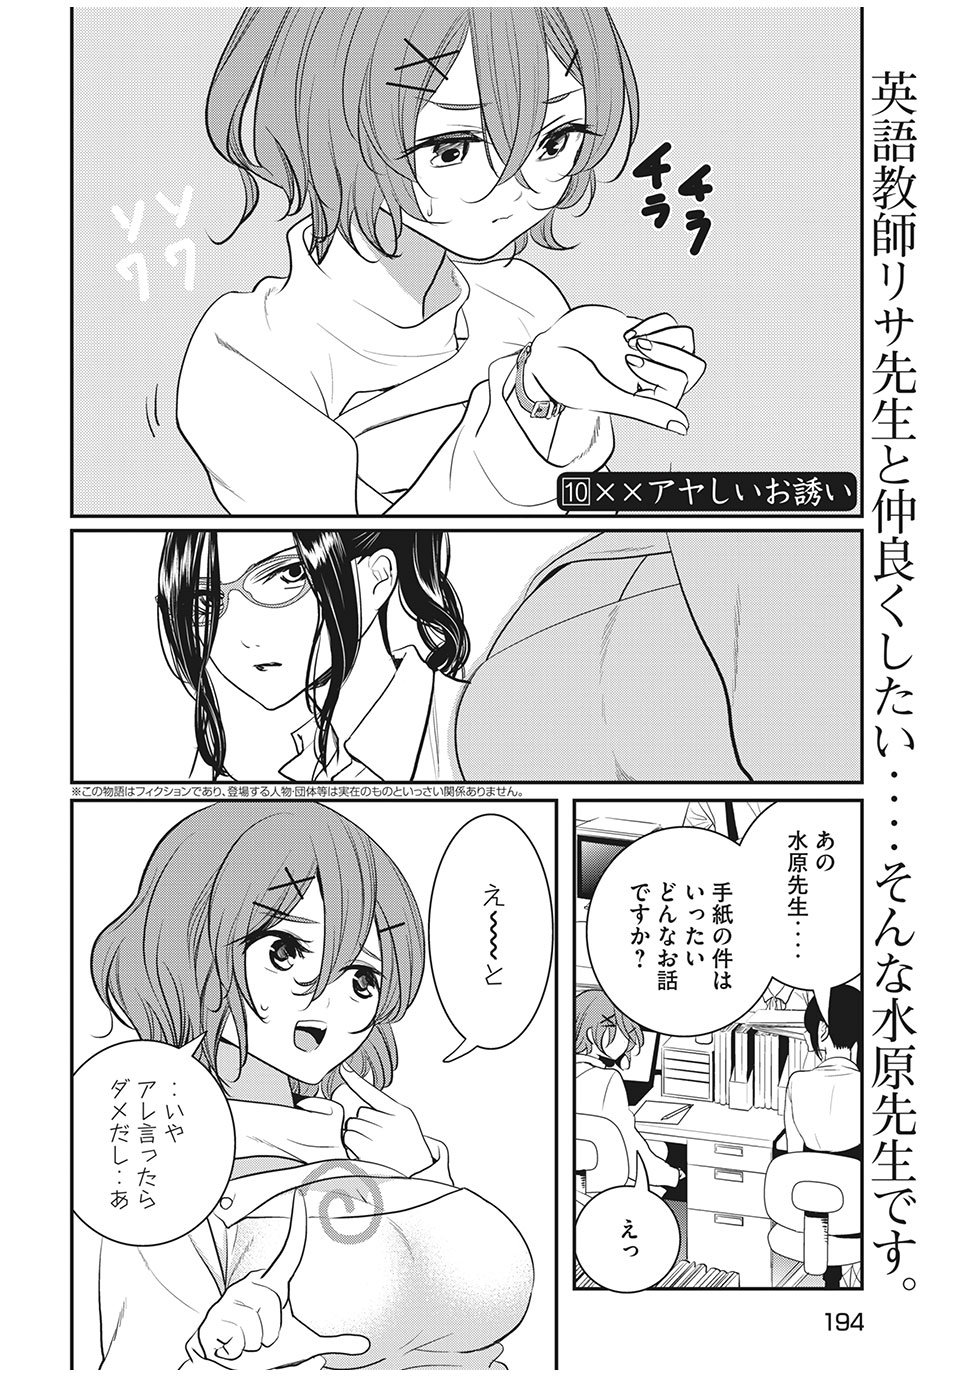 Eigo ×× Sensei - Chapter 10 - Page 2